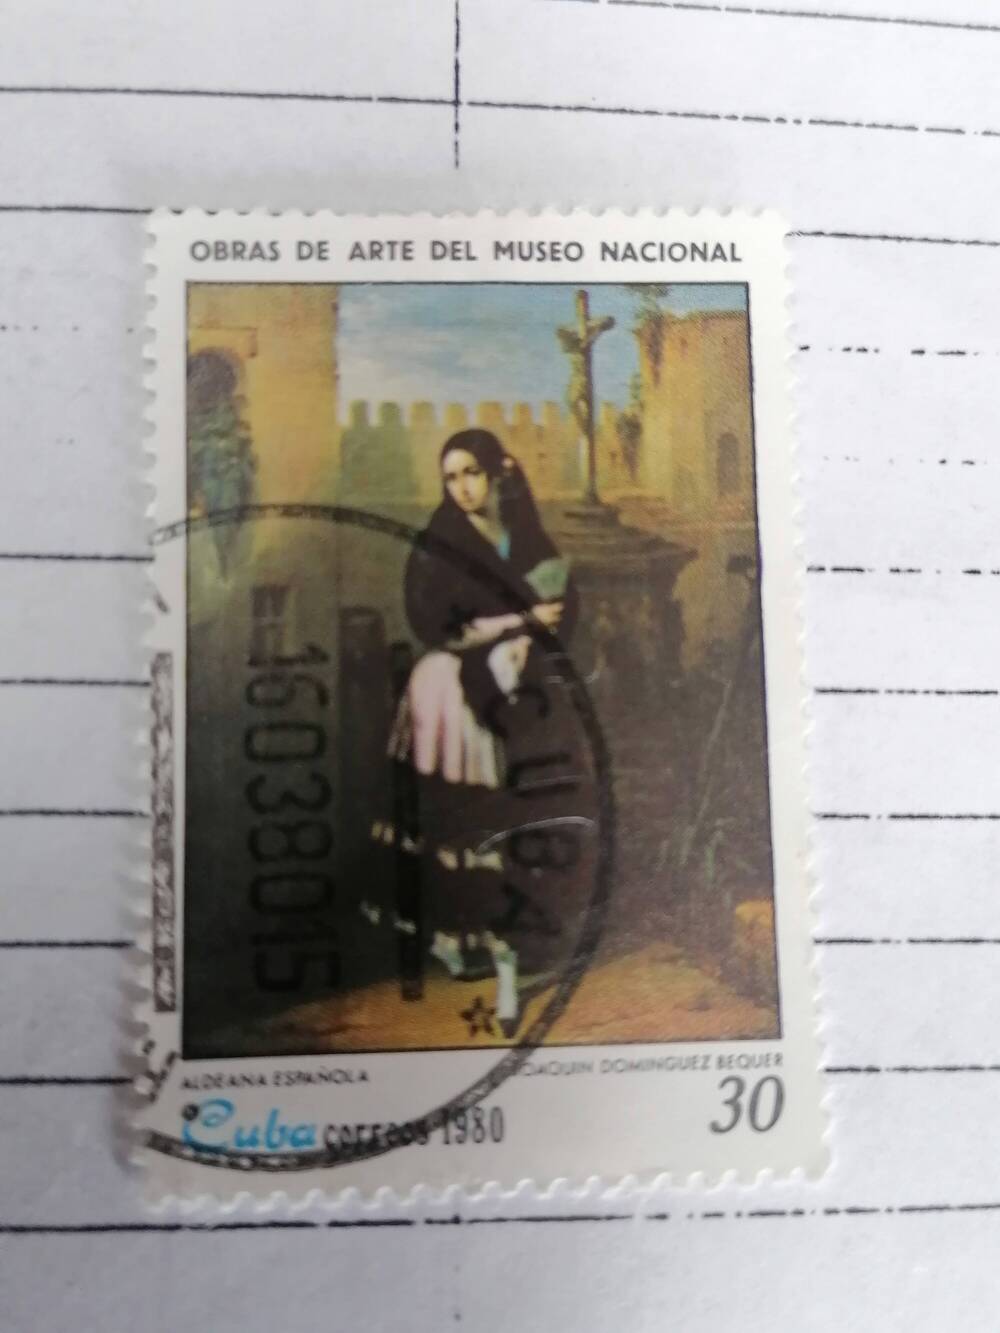 Марка почтовая гашеная, Cuba Correos,Куба,1980г, Obras de  arte muzeo Nacional,Aldeona Espanola